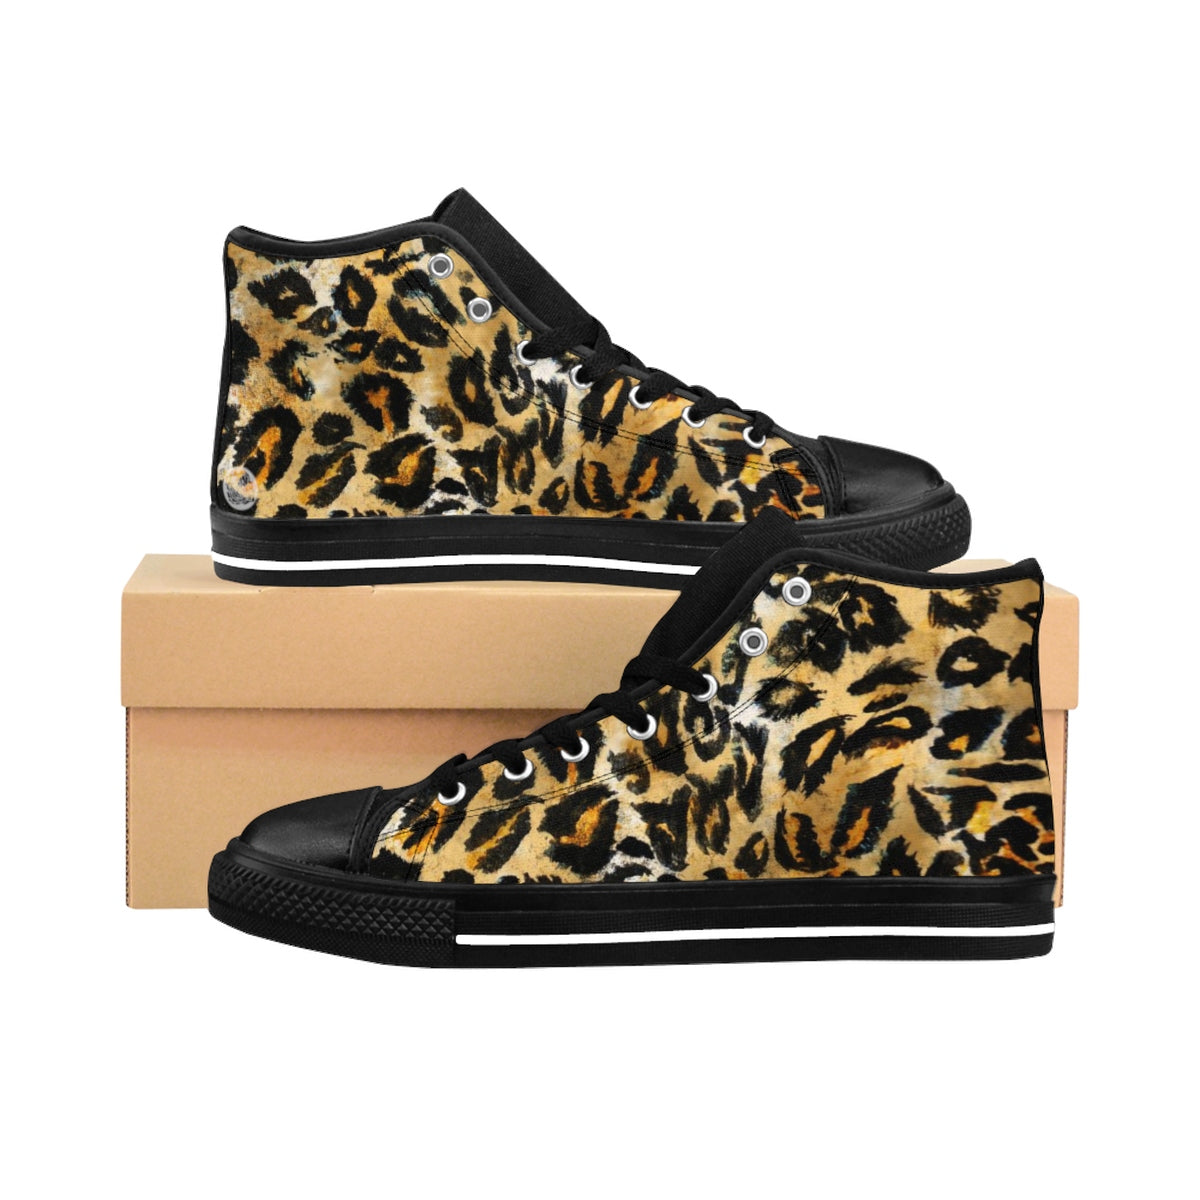 Brown Snow Leopard Print Men's Sneakers, Leopard Animal Print Men's High Top Sneakers-Men's High Top Sneakers-US 9-Heidi Kimura Art LLC